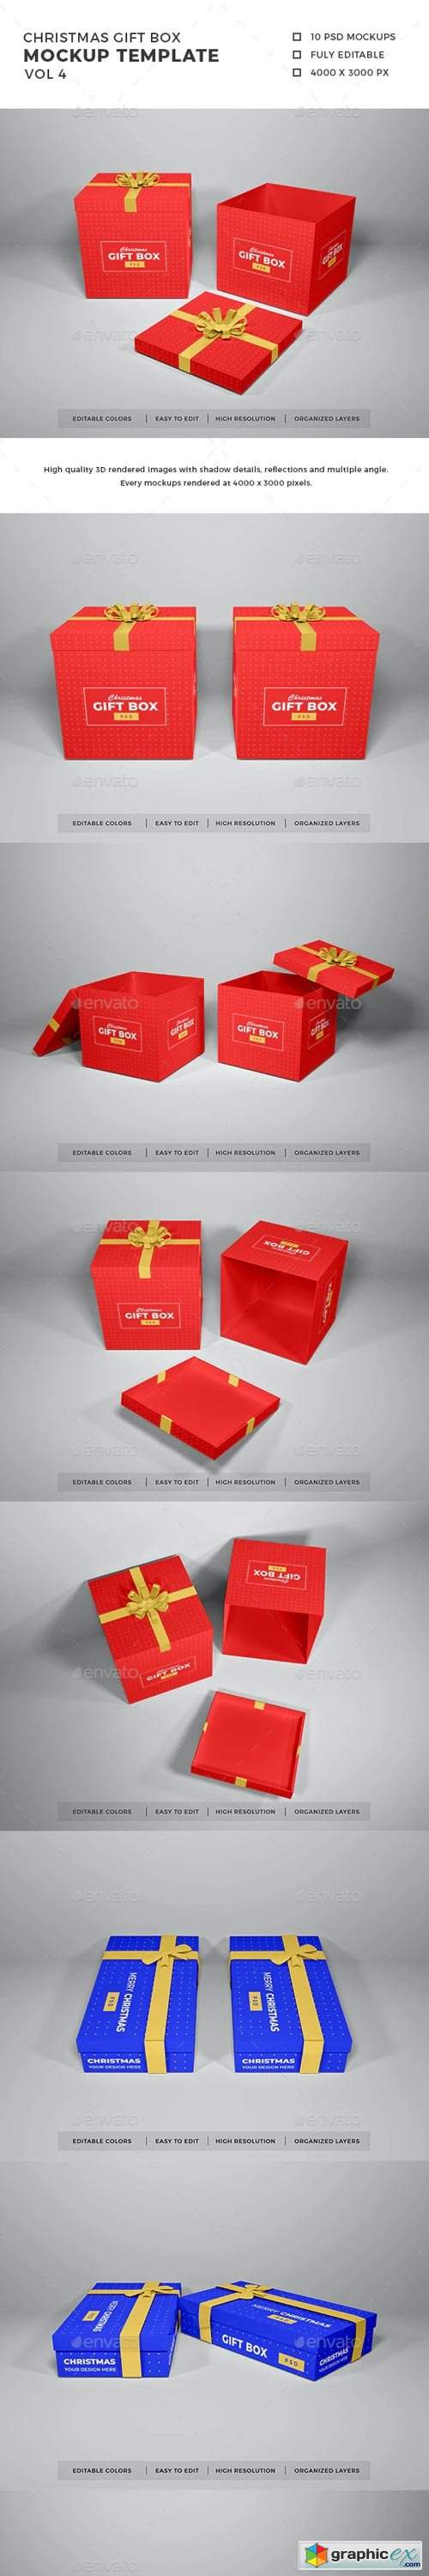 Christmas Gift Box Mockup Vol 4 